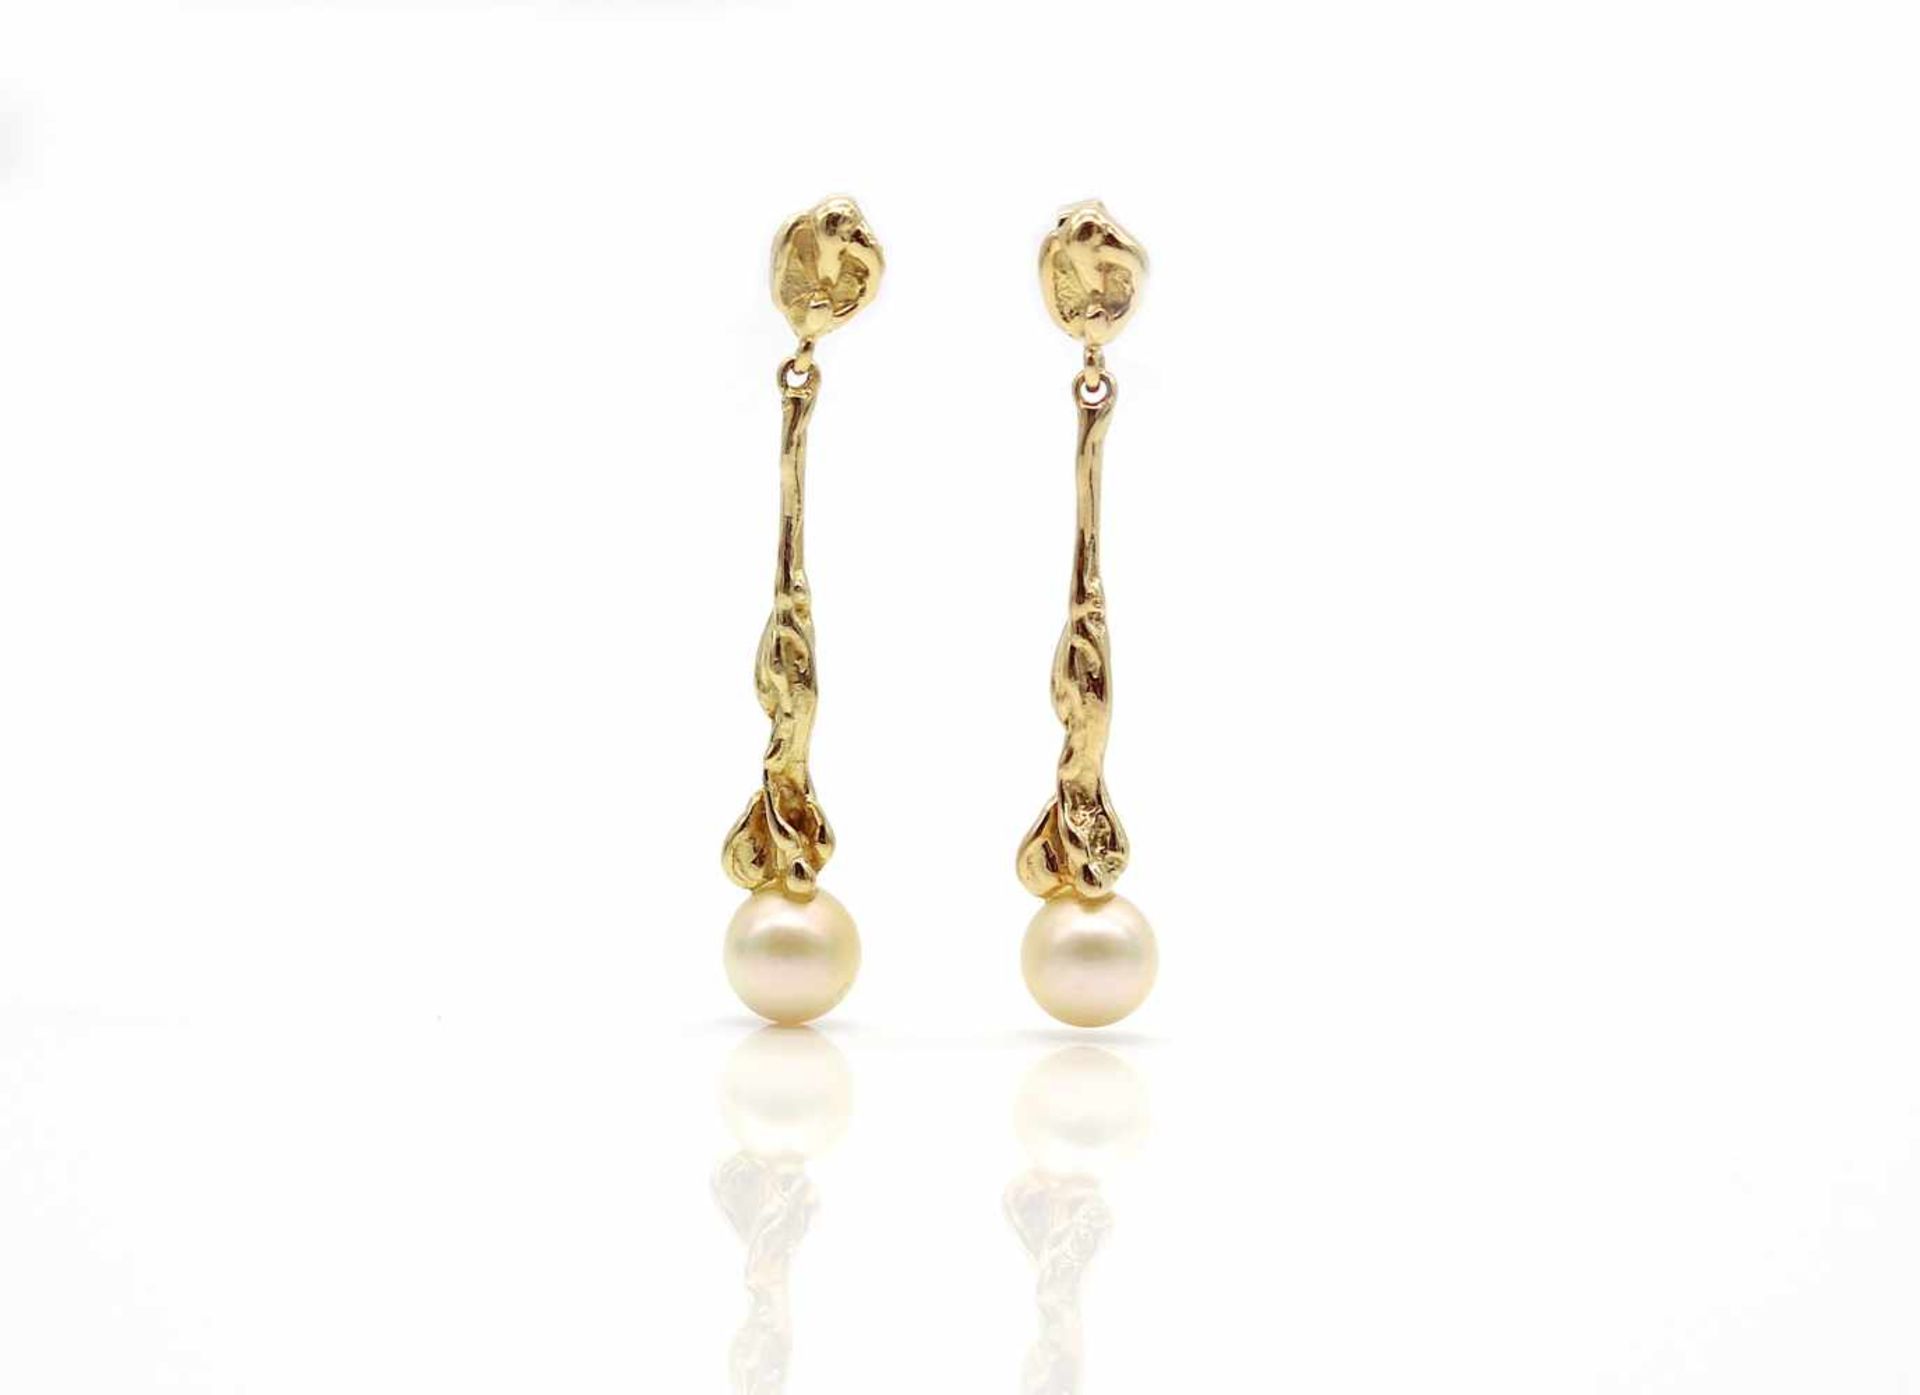 Paar Ohrringe aus 585er Gold mit je einer Zuchtperle Durchmesser 7 mm.Gewicht 5,6 g, Länge 41 mmPair